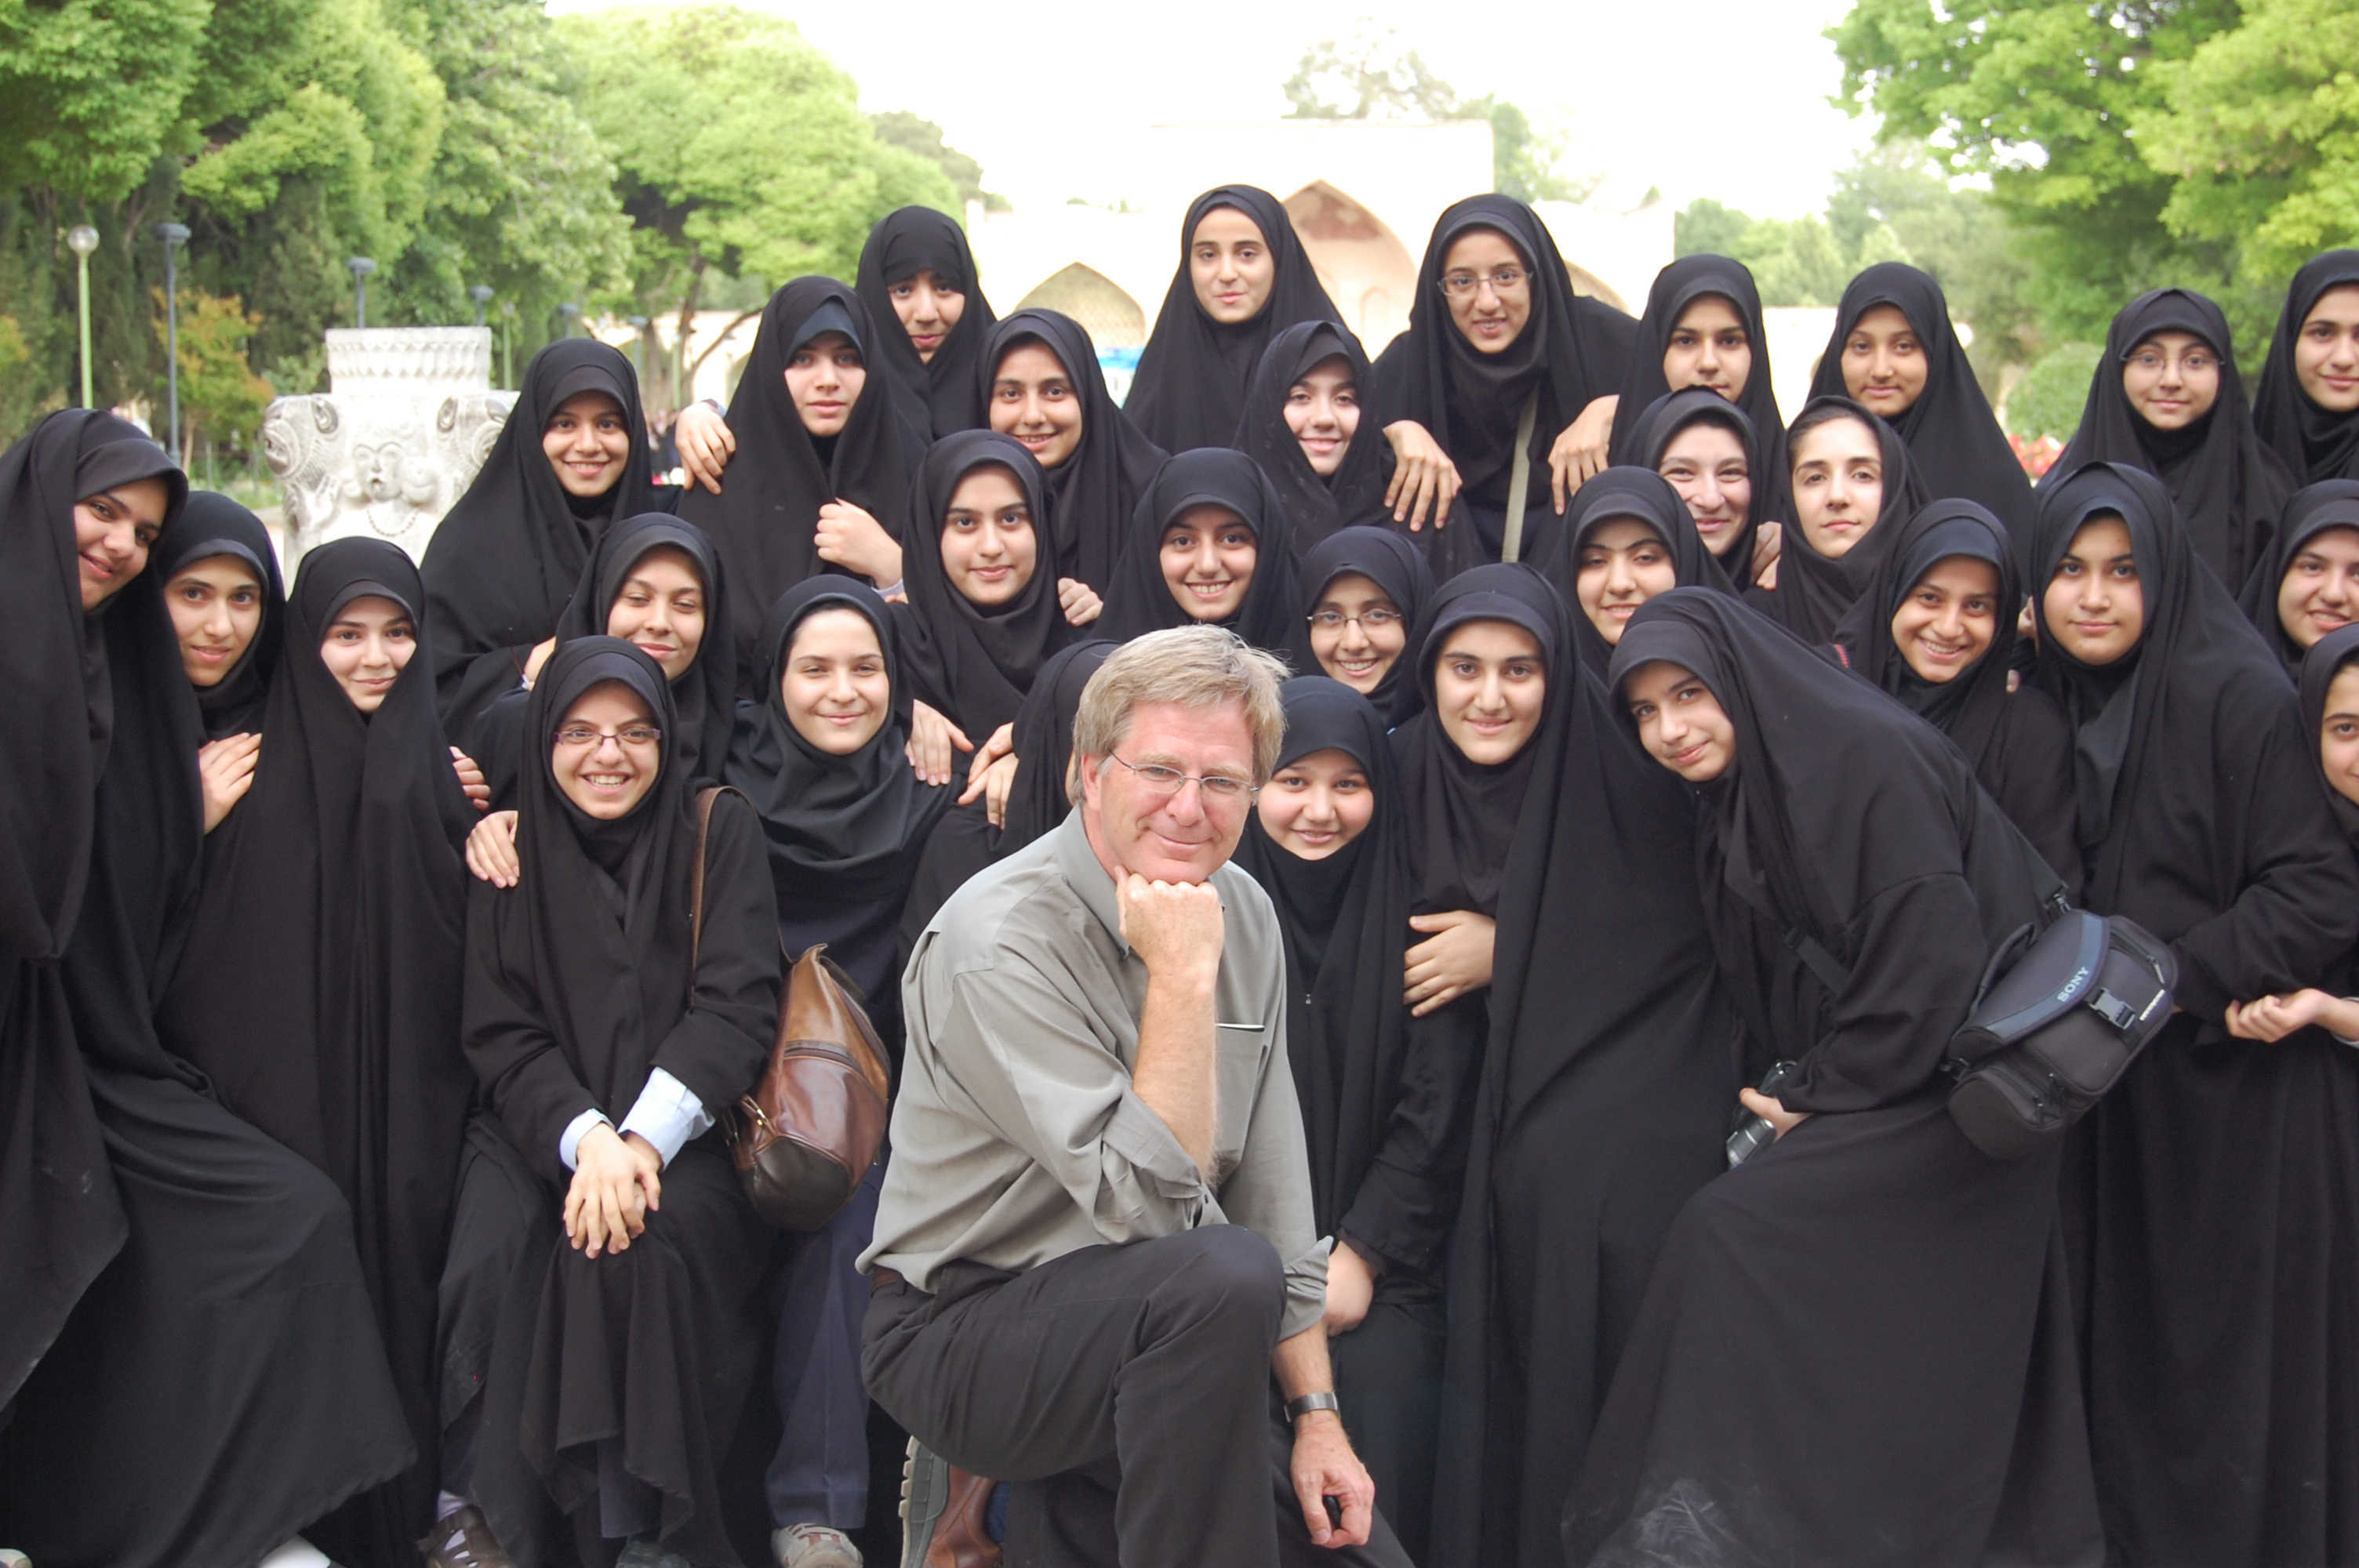 Rick Steves with Schoolgirls in Iran